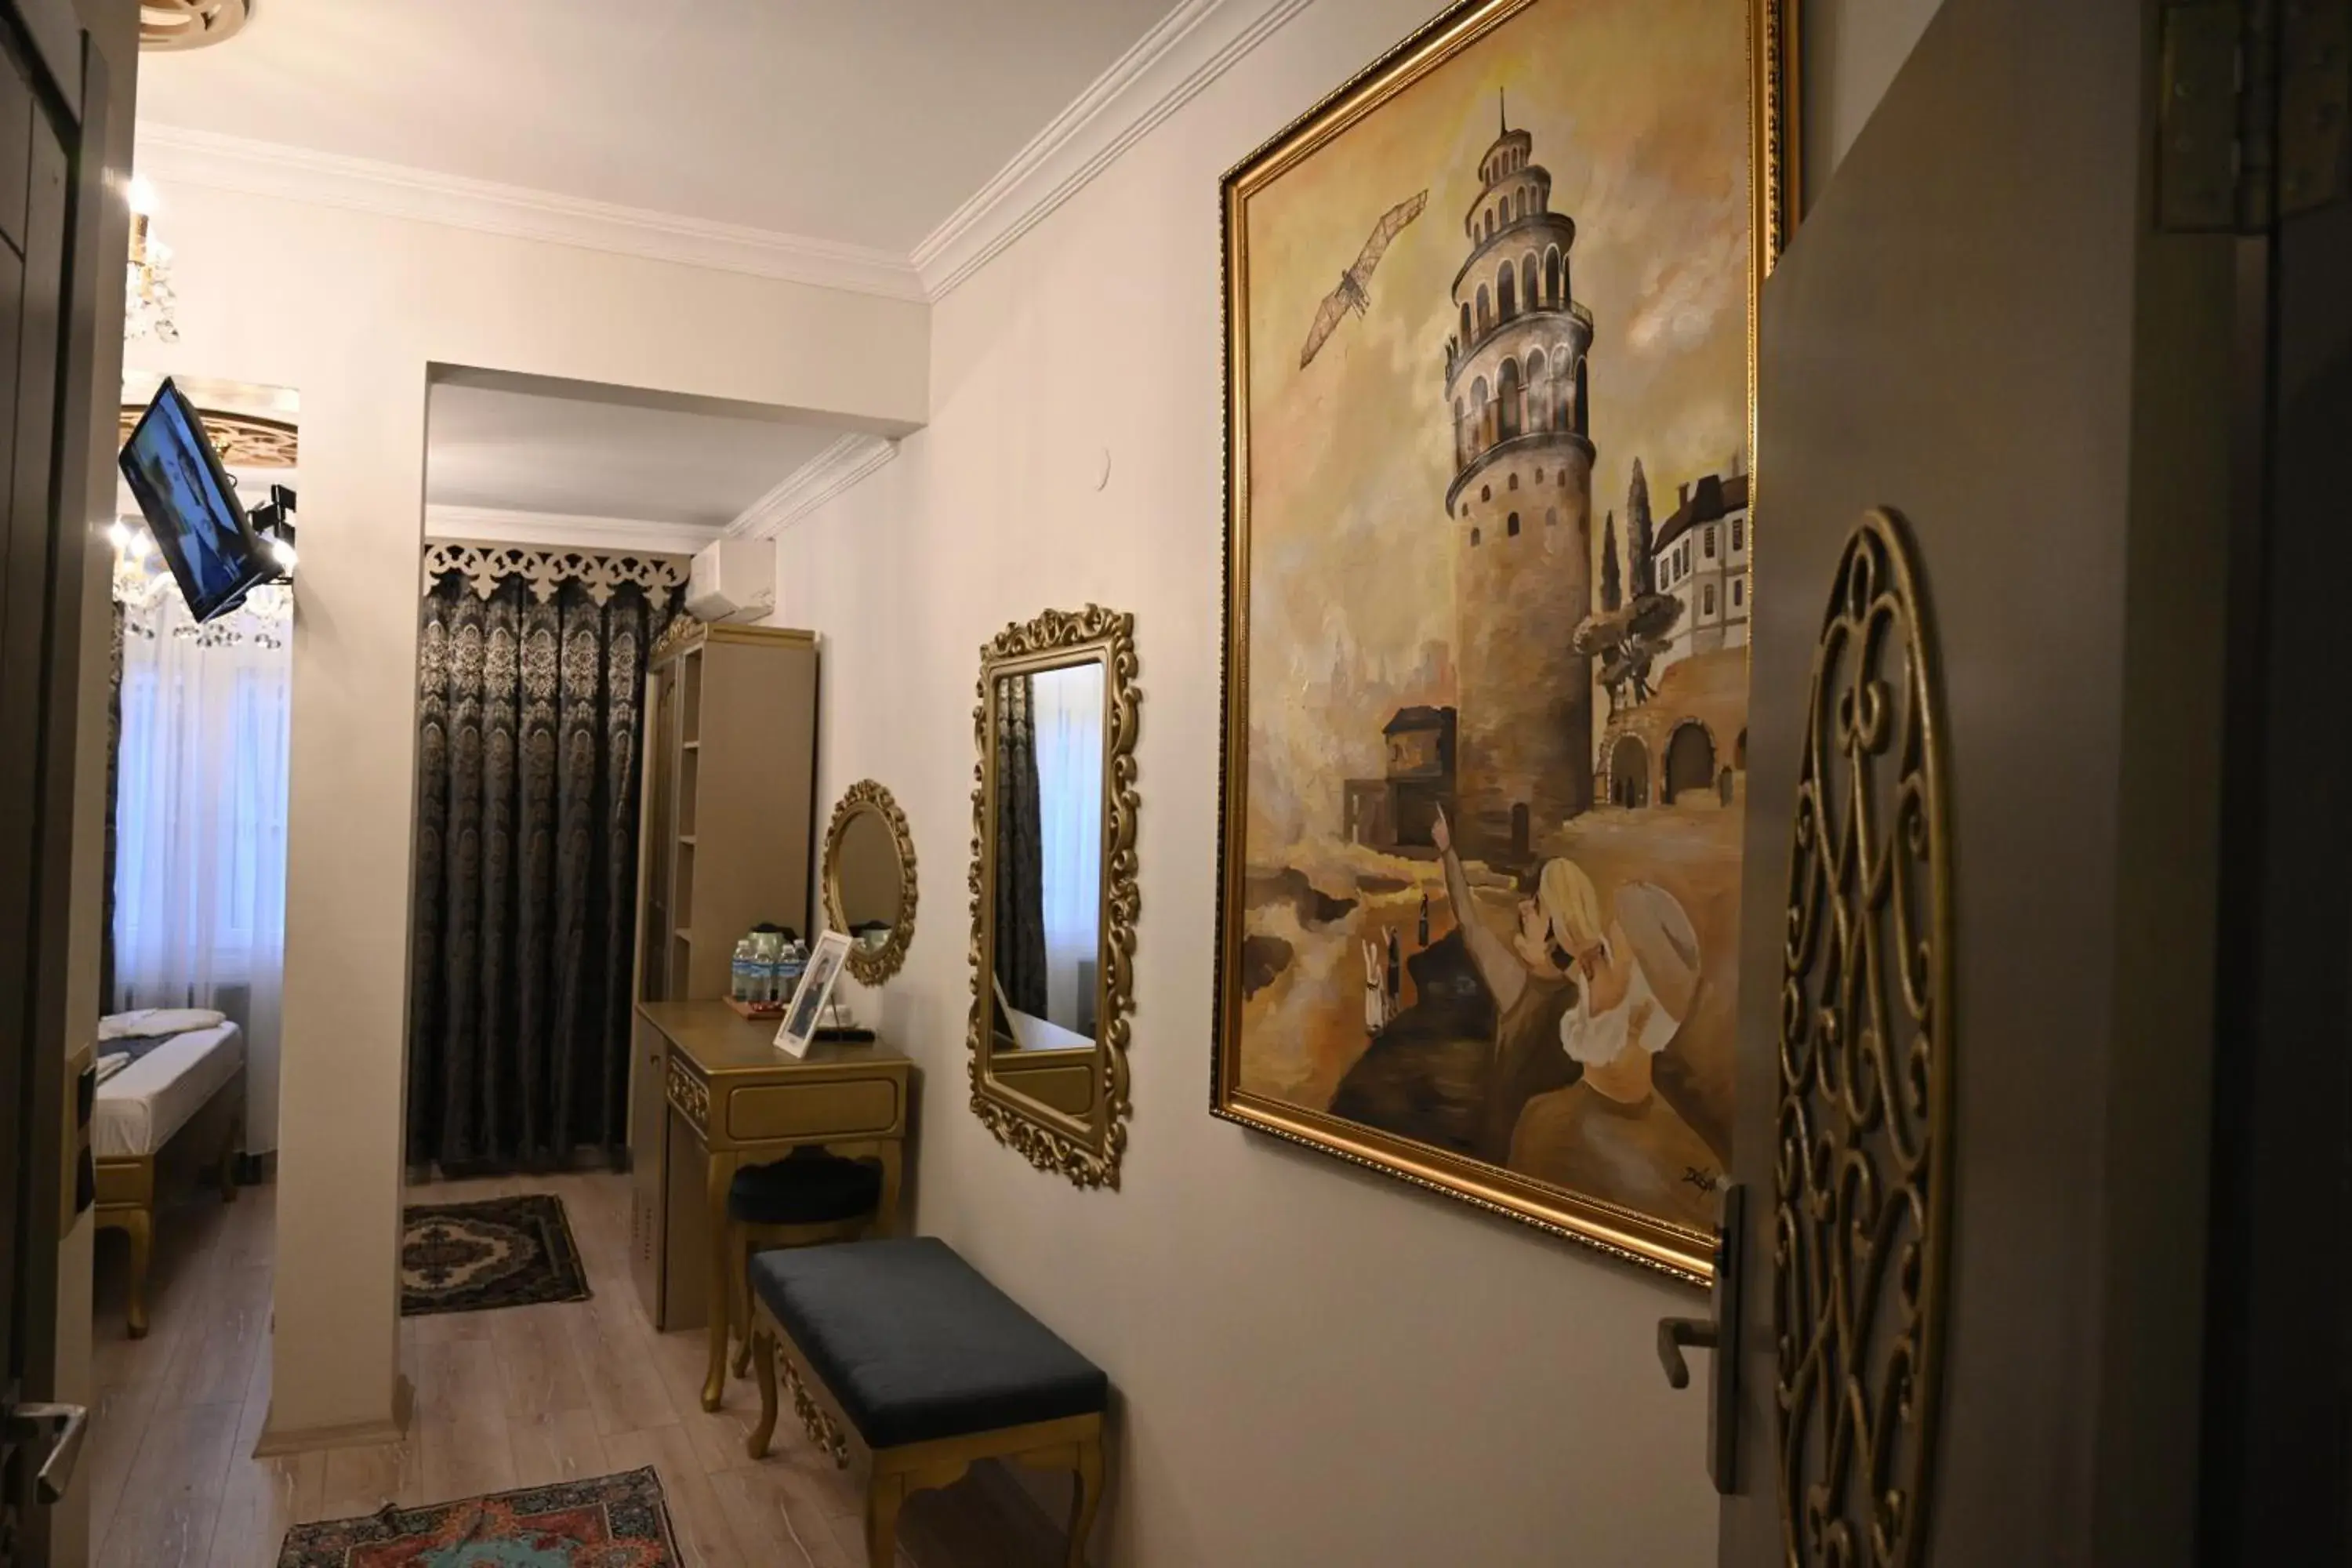 Decorative detail in Ethnica Suites